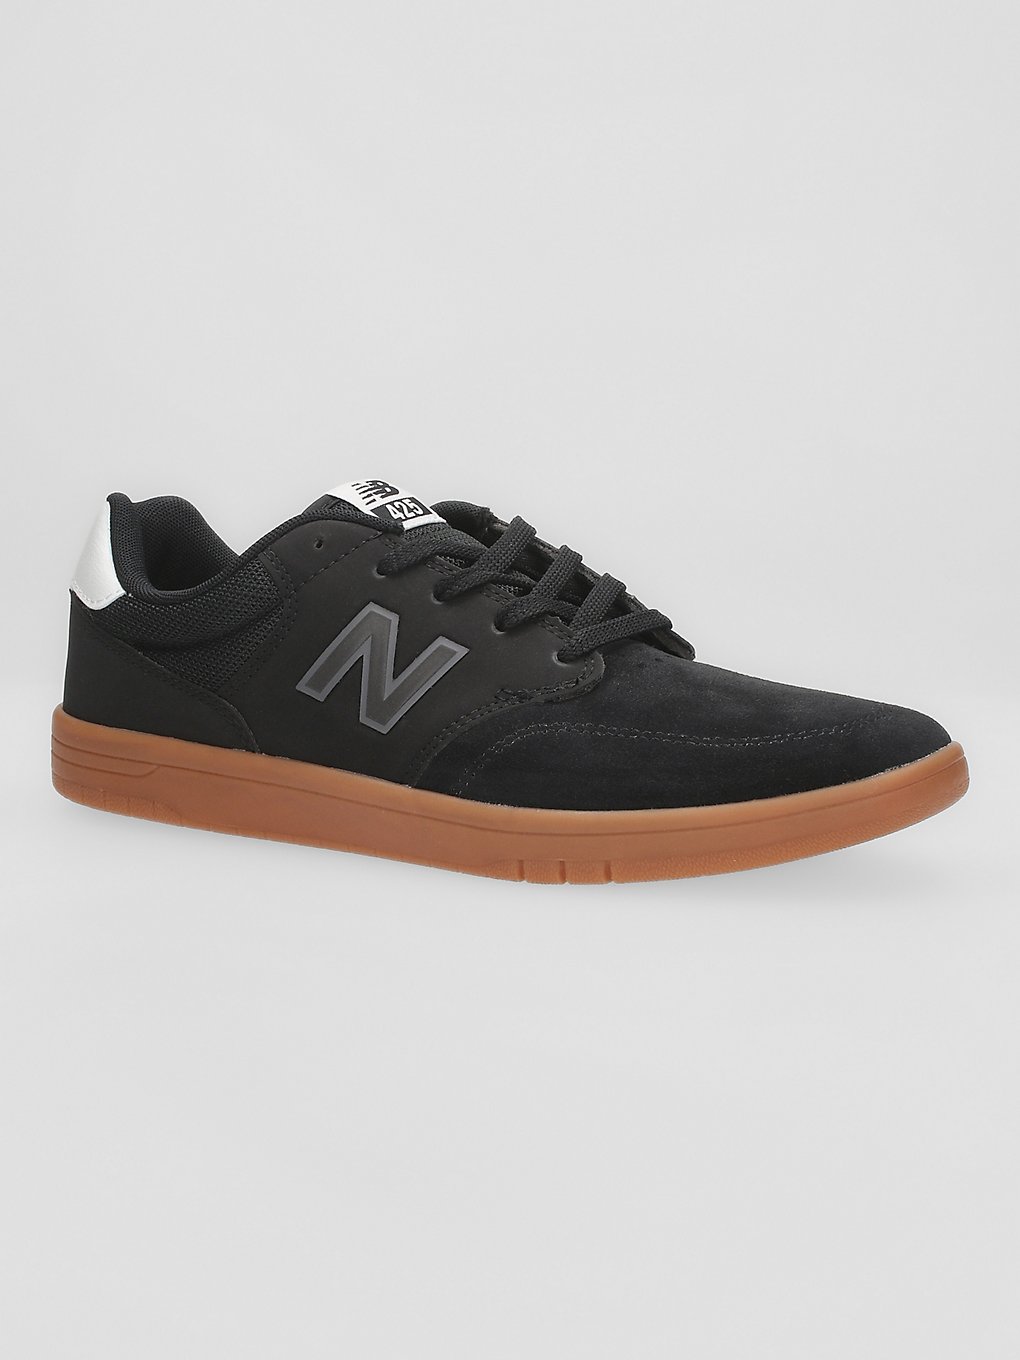 New Balance Numeric 425 Skateschoenen zwart